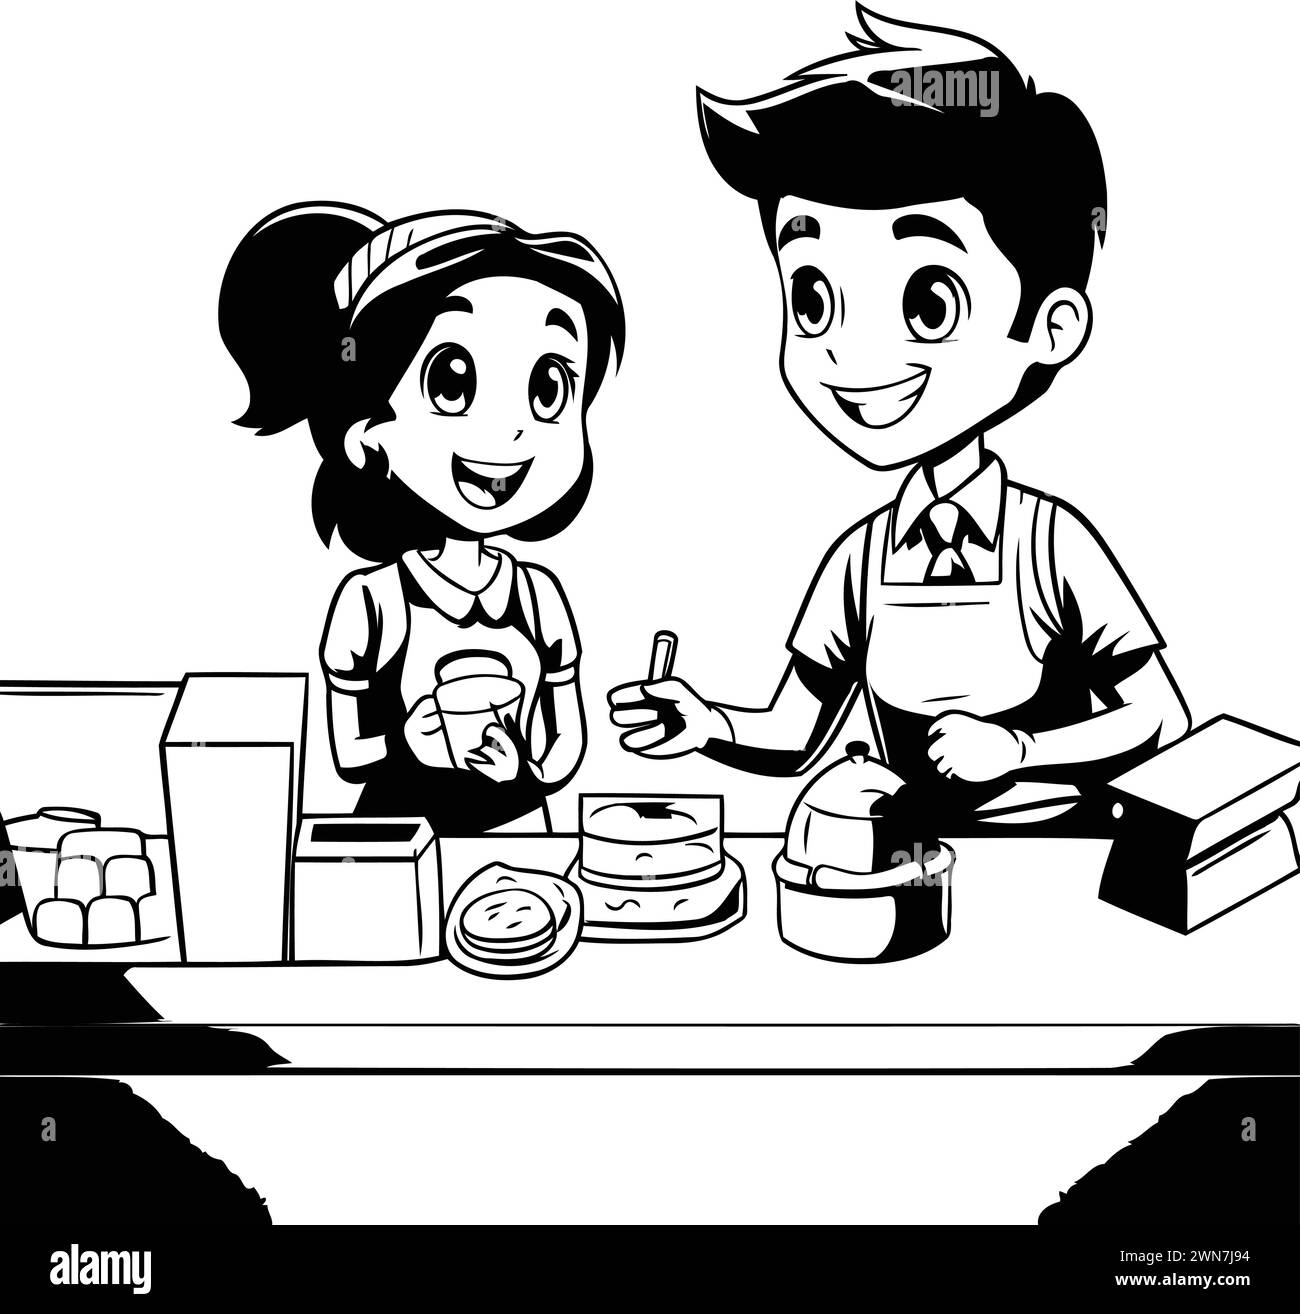 Nettes kleines Mädchen und Junge kochen zusammen in der Küche Vektor Illustration grafisches Design Stock Vektor